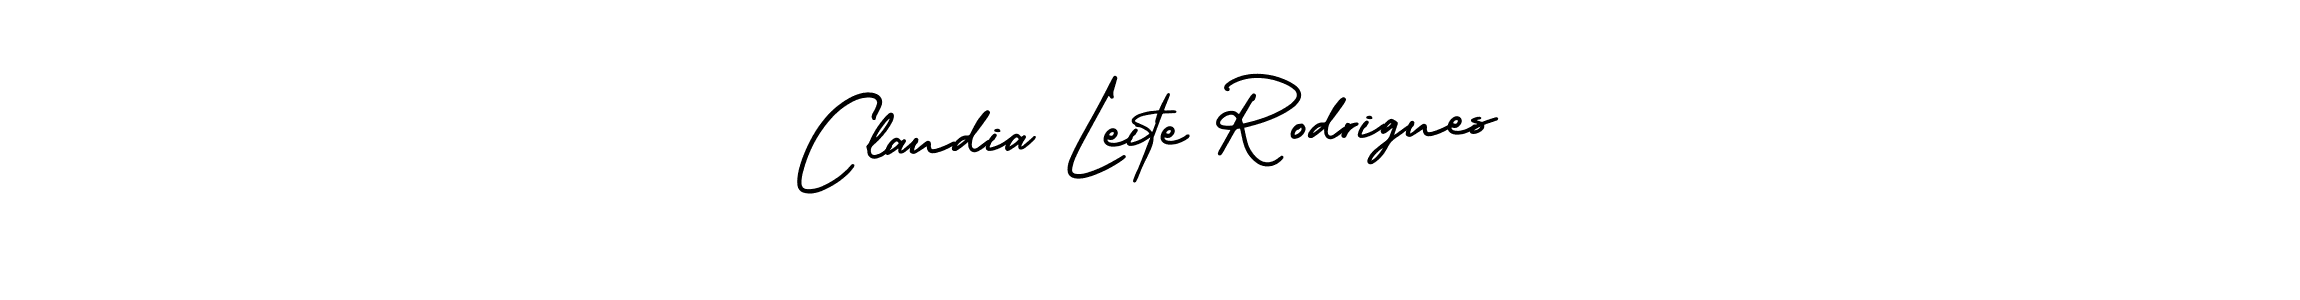 Best and Professional Signature Style for Claudia Leite Rodrigues. AmerikaSignatureDemo-Regular Best Signature Style Collection. Claudia Leite Rodrigues signature style 3 images and pictures png